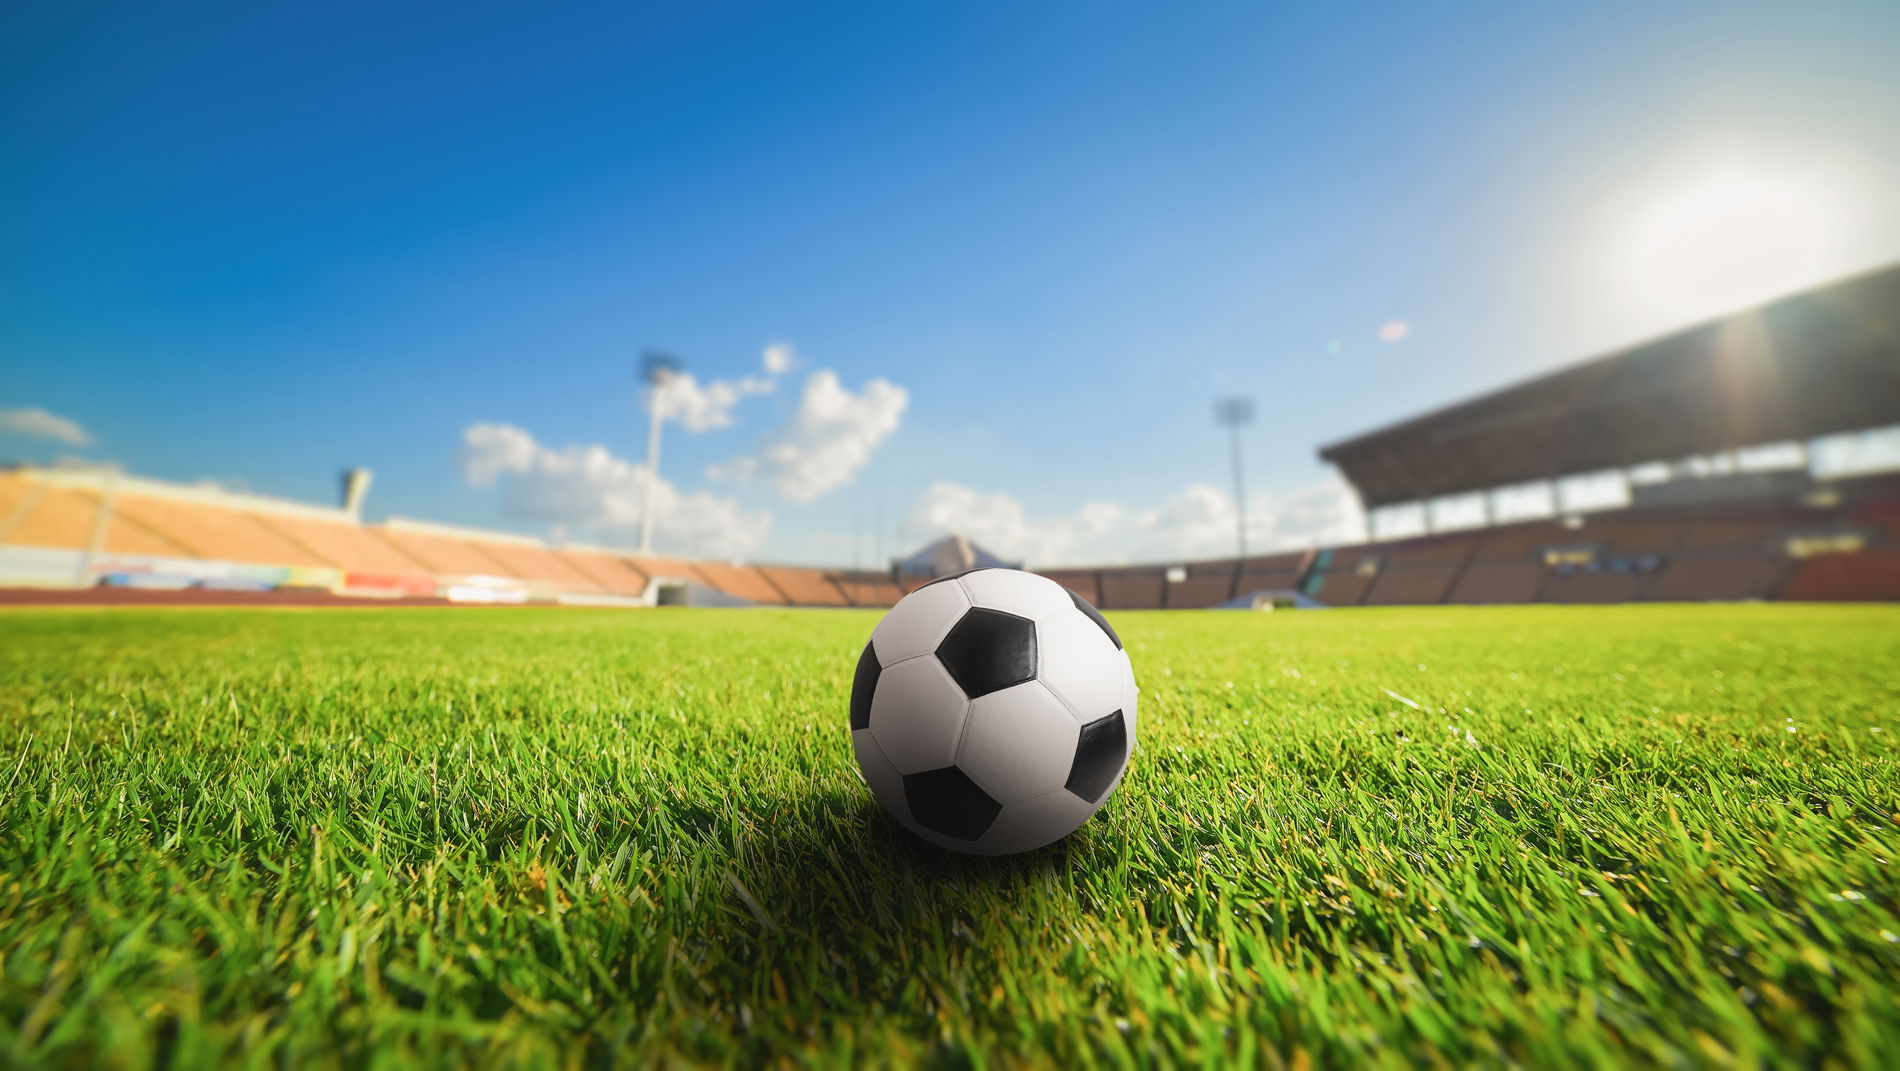 Free photo: Soccer Field - Field, Goal, Soccer - Free Download - Jooinn